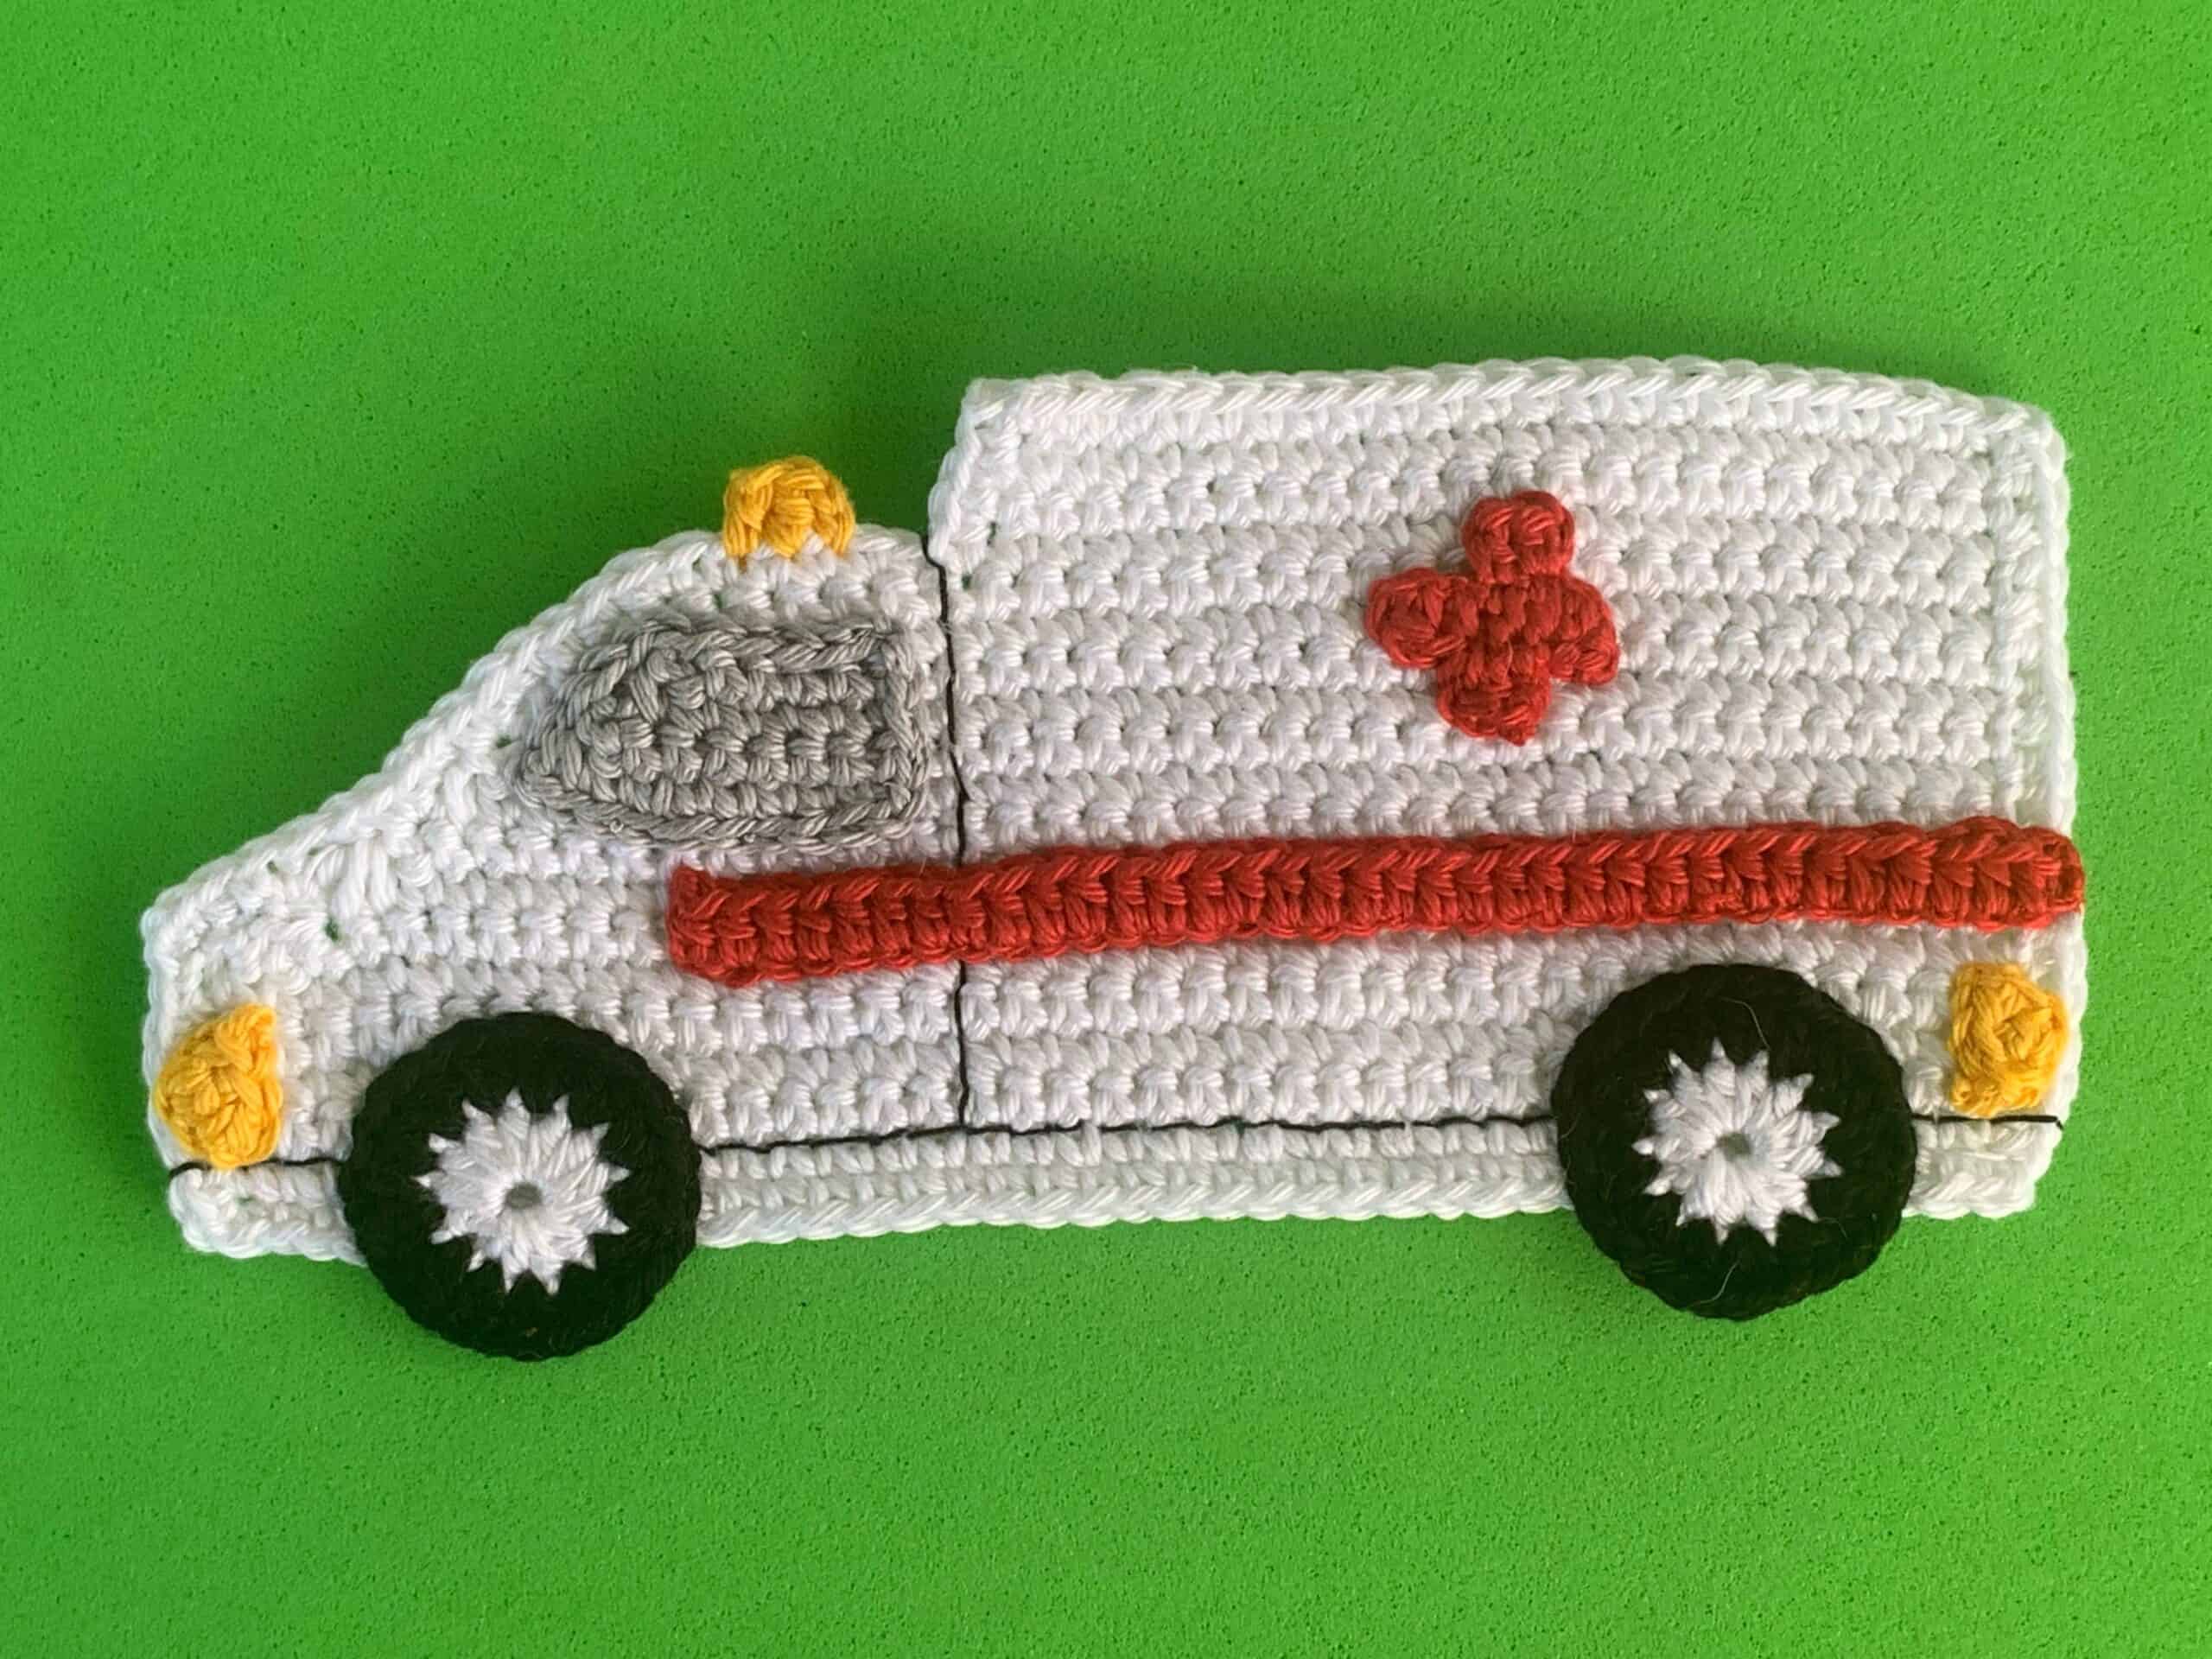 Finished crochet ambulance 4 ply landscape